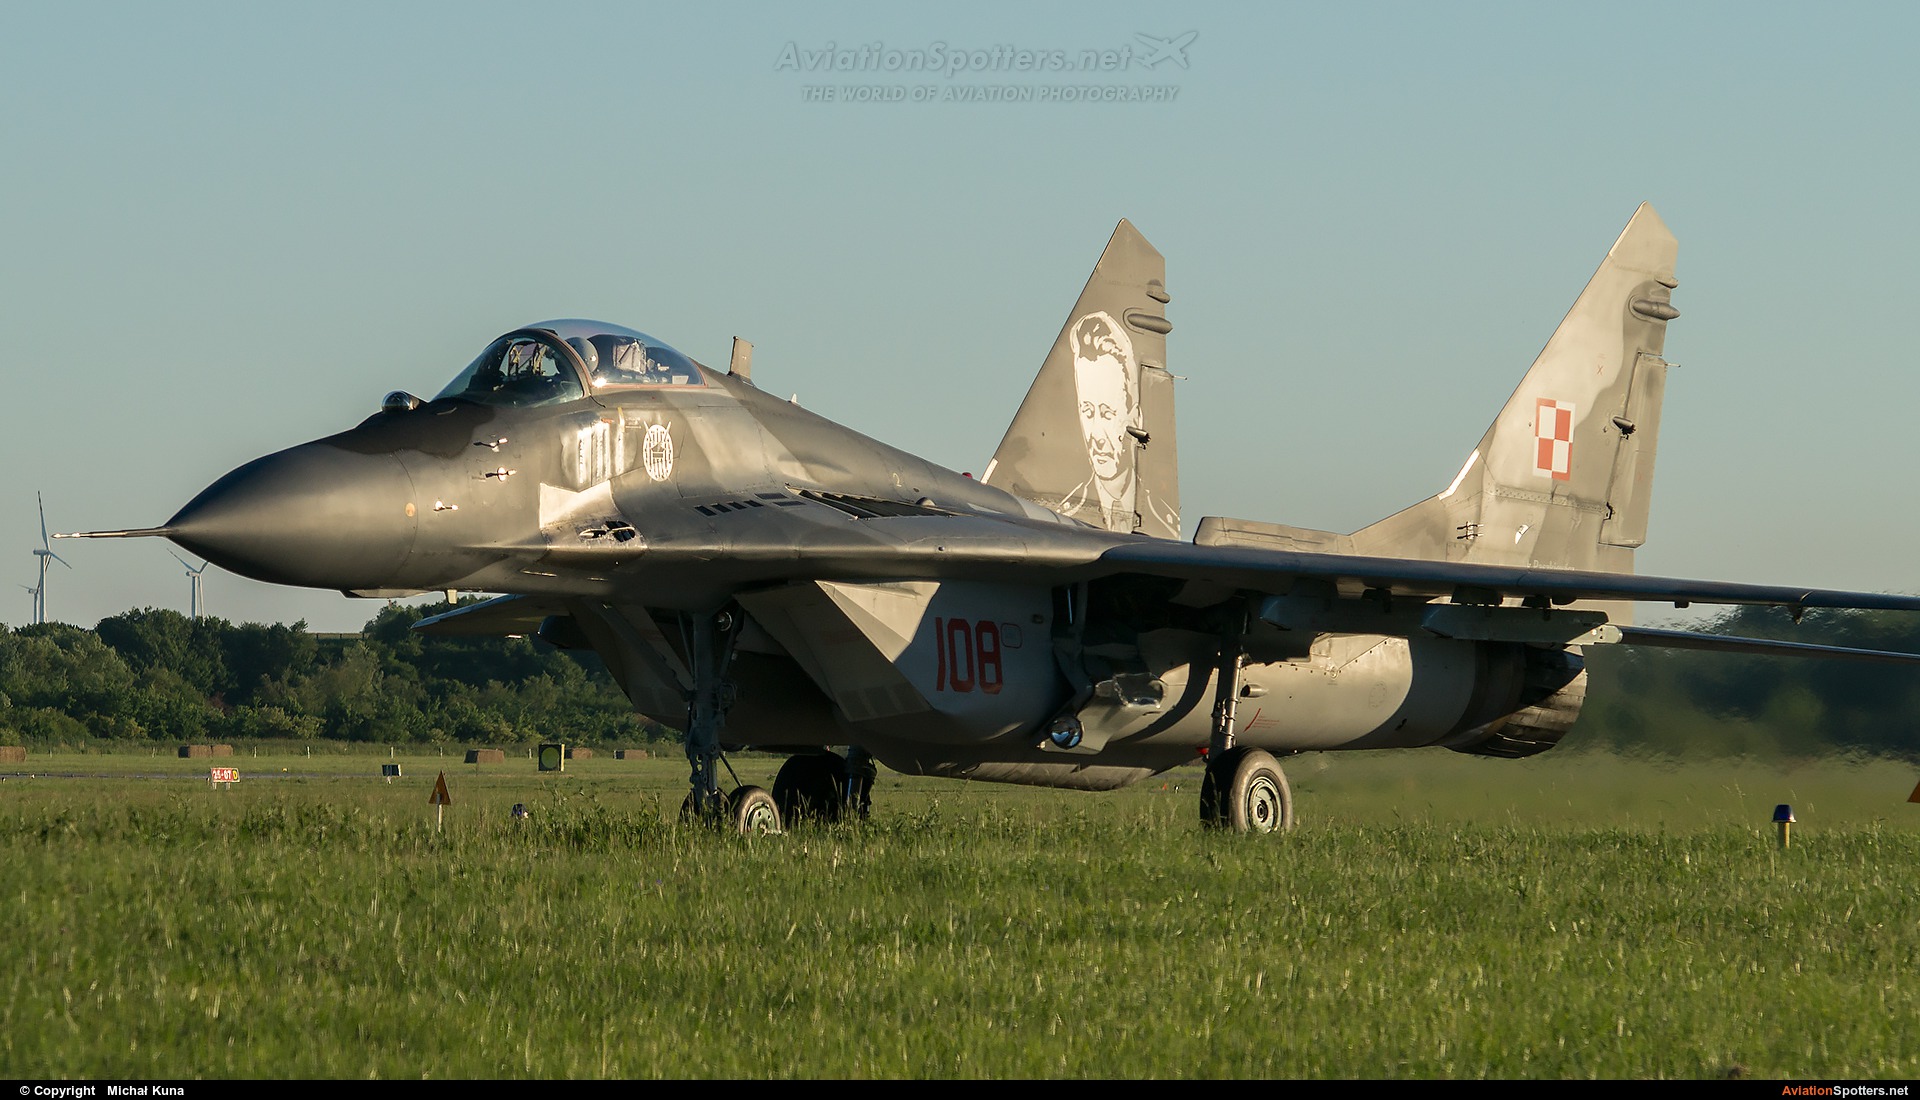 Poland - Air Force  -  MiG-29A  (108) By Michał Kuna (big)